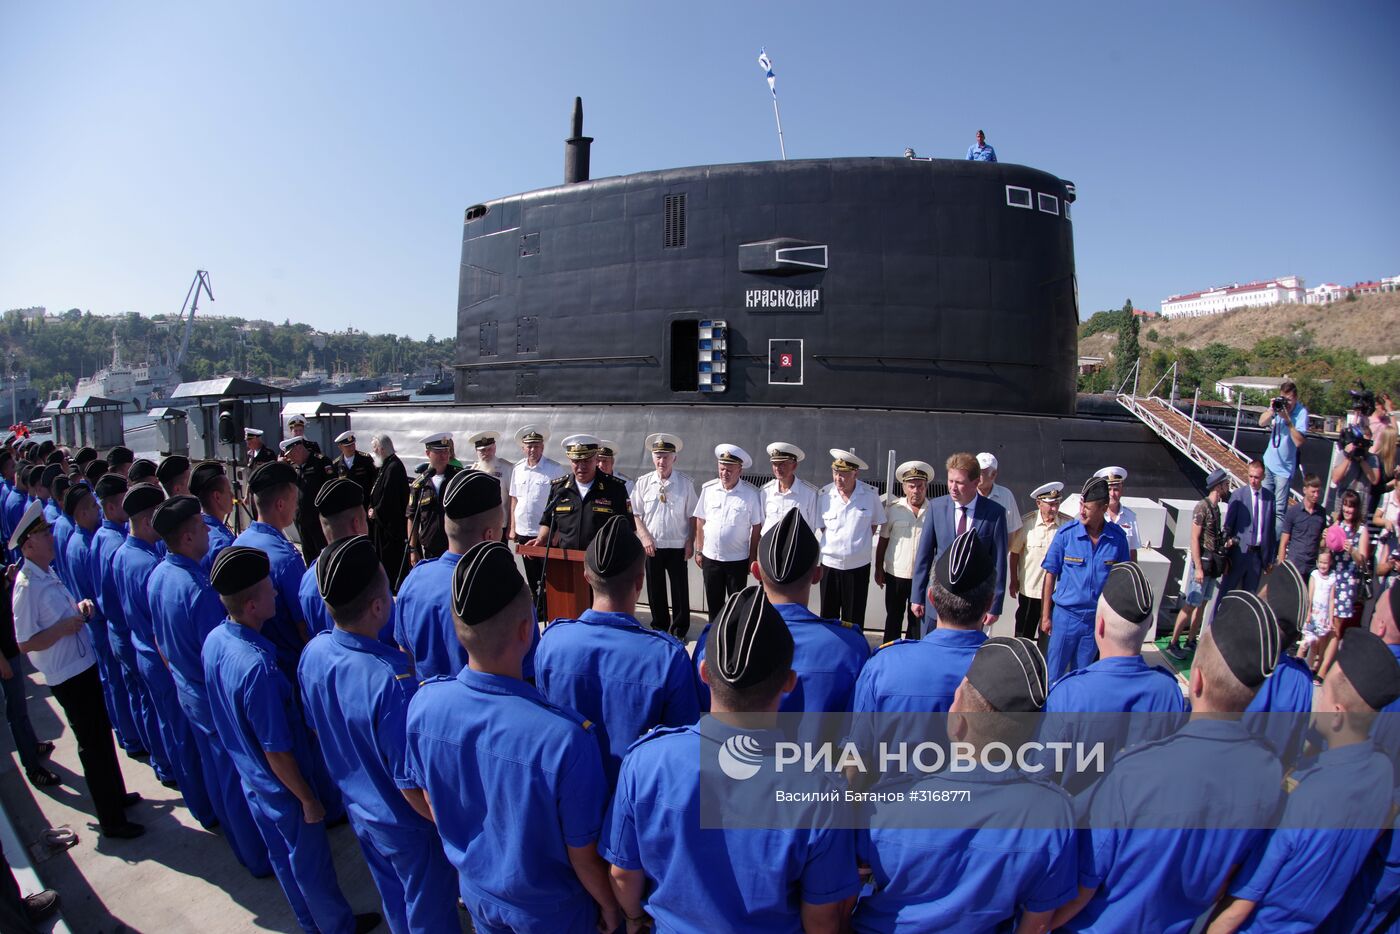 Встреча новой дизельной подводной лодки "Краснодар" в Севастополе